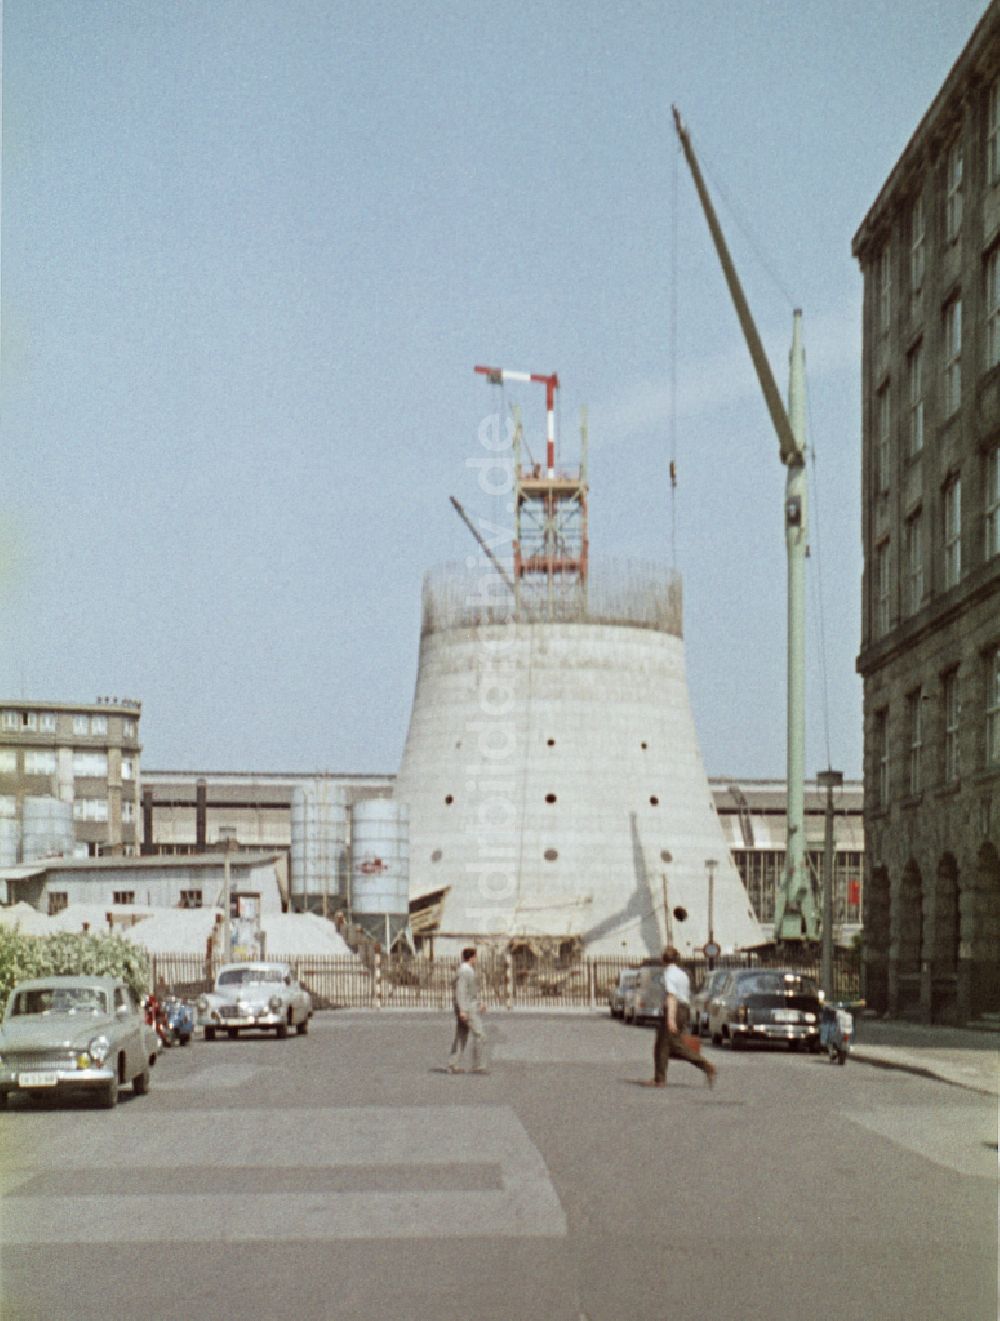 DDR-Fotoarchiv: Berlin - Neubau des Fernmeldeturm und Fernsehturm in Berlin in der DDR